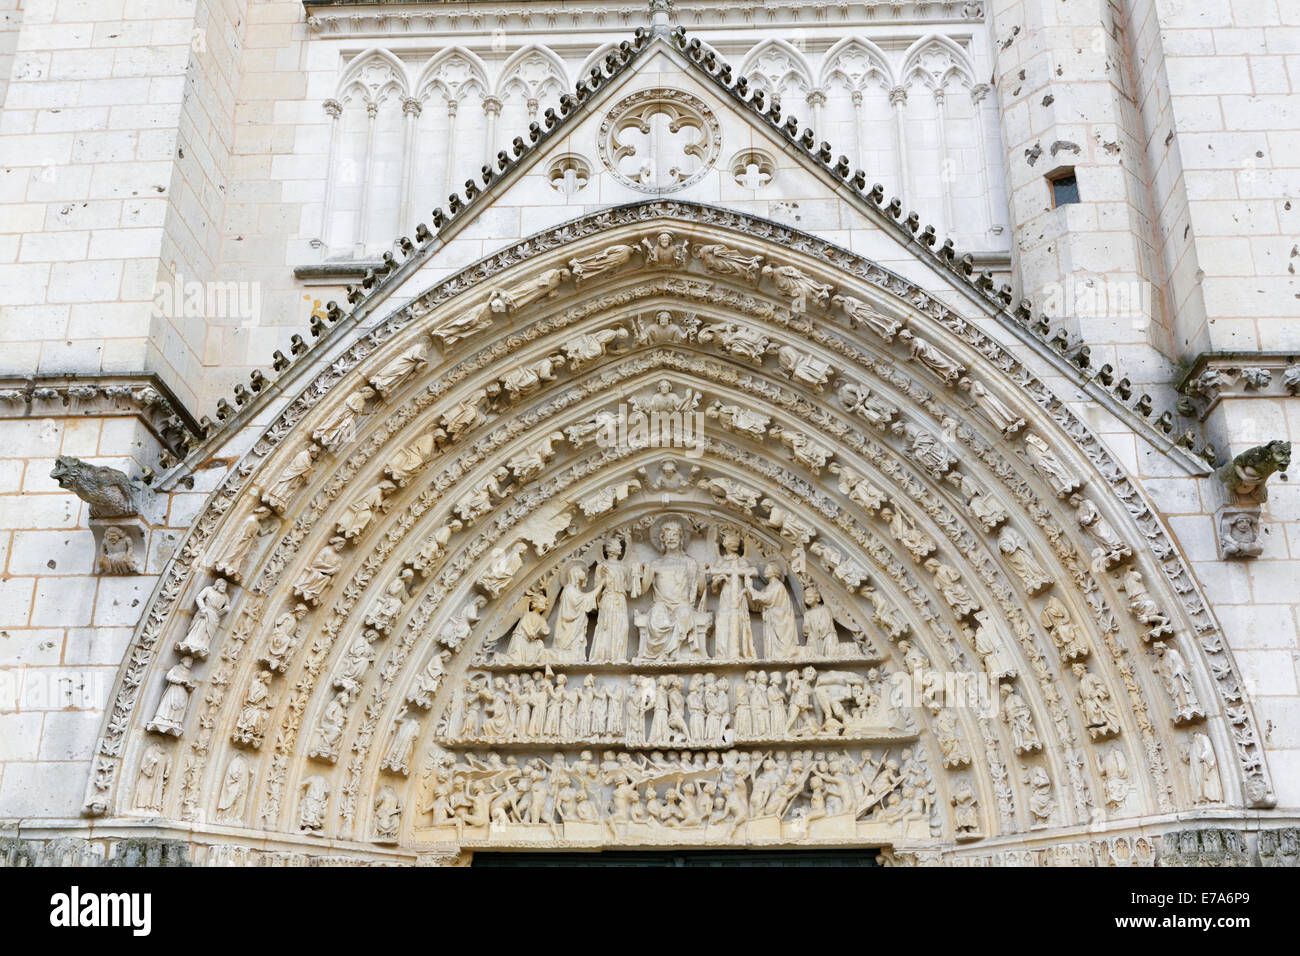 Cathédrale Saint-Pierre de Poitiers, ou Cathédrale de Poitiers, grande porte de l'ouest, détail, Poitiers, Vienne, Poitou-Charentes, France Banque D'Images